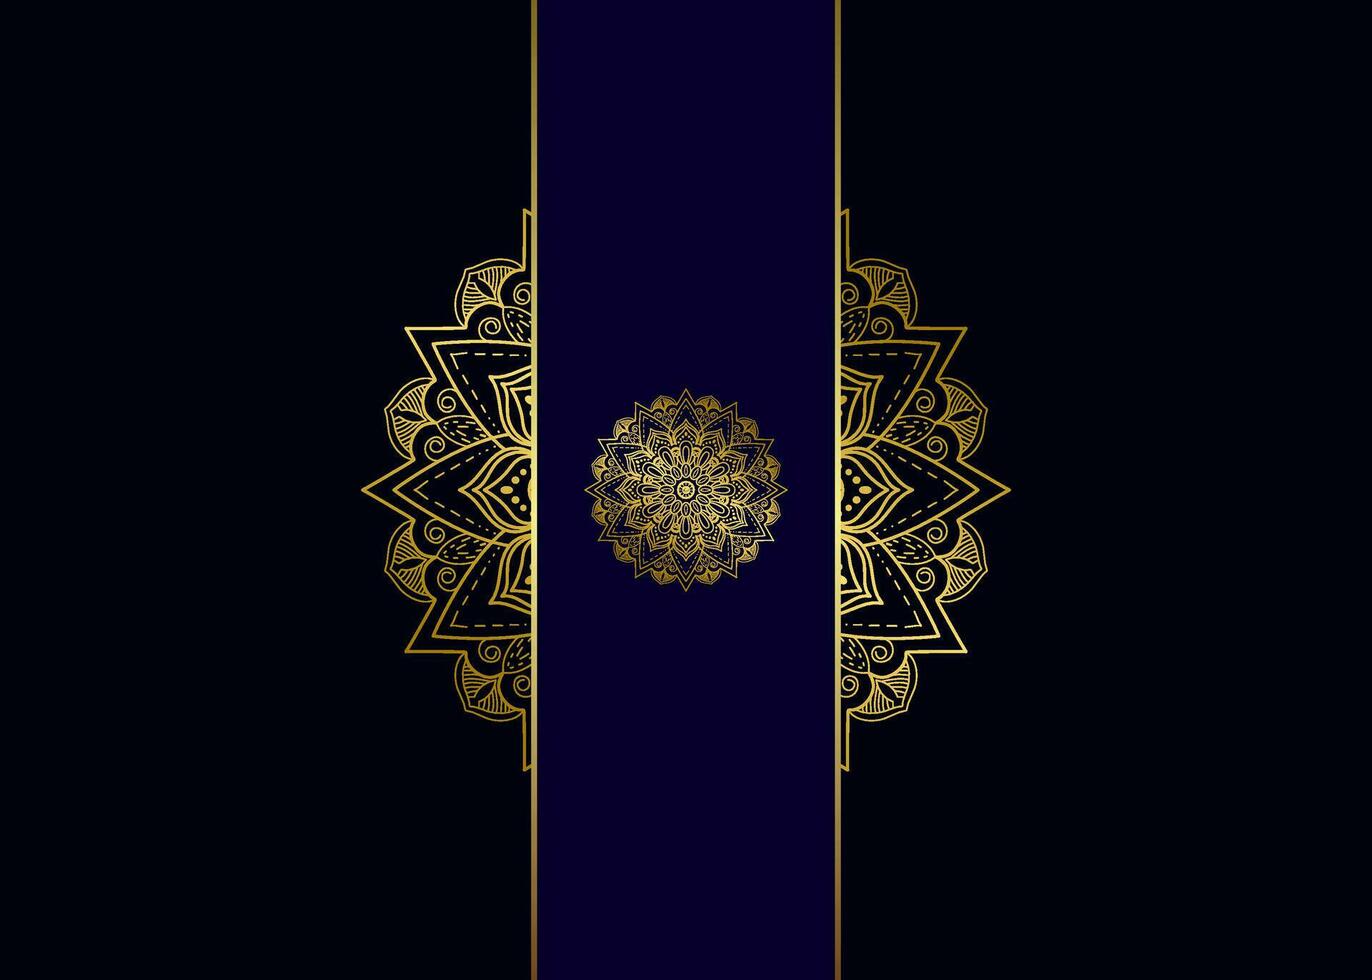 blauer Hintergrund mit goldener Mandalaverzierung vektor